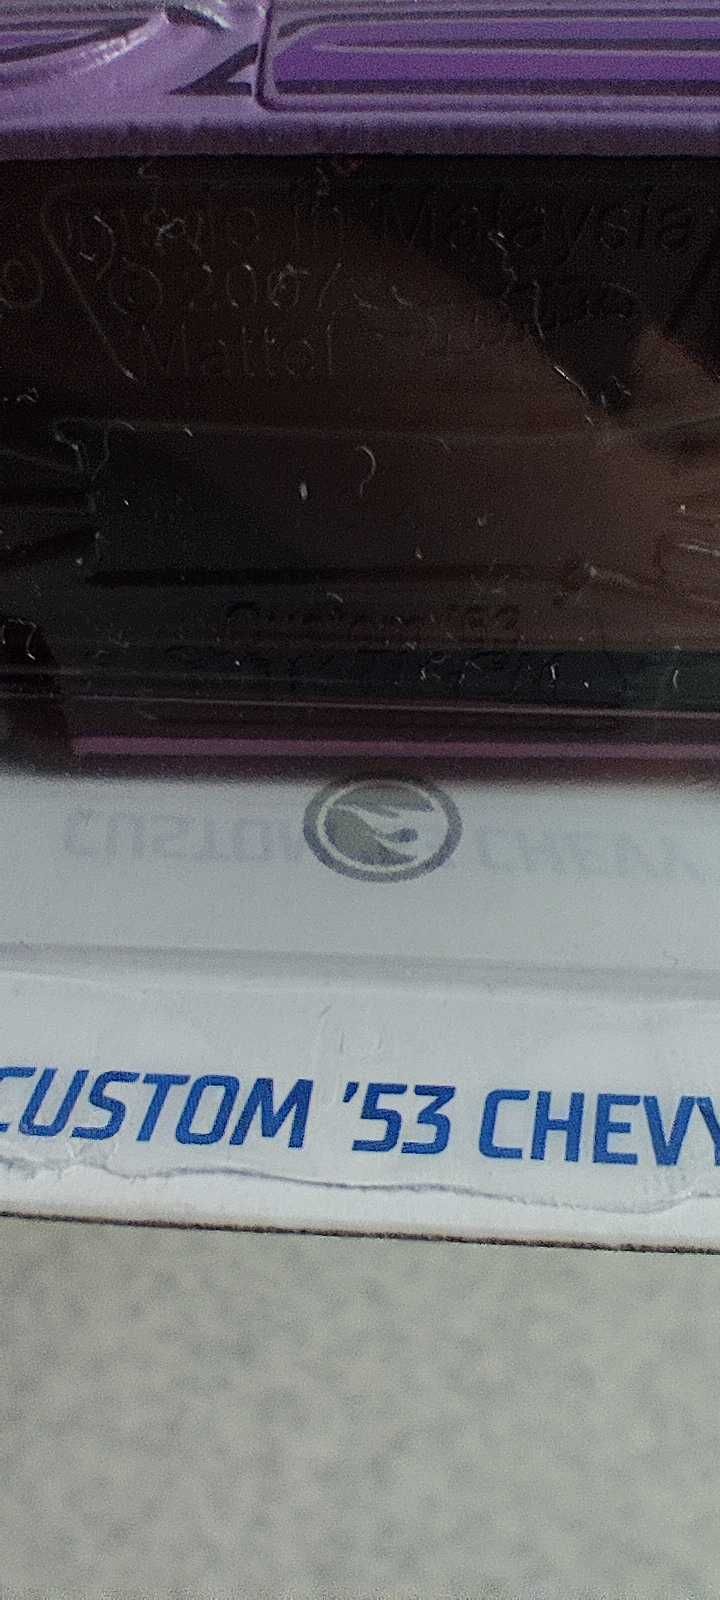 Tresure hunt Custom '53 Chevy